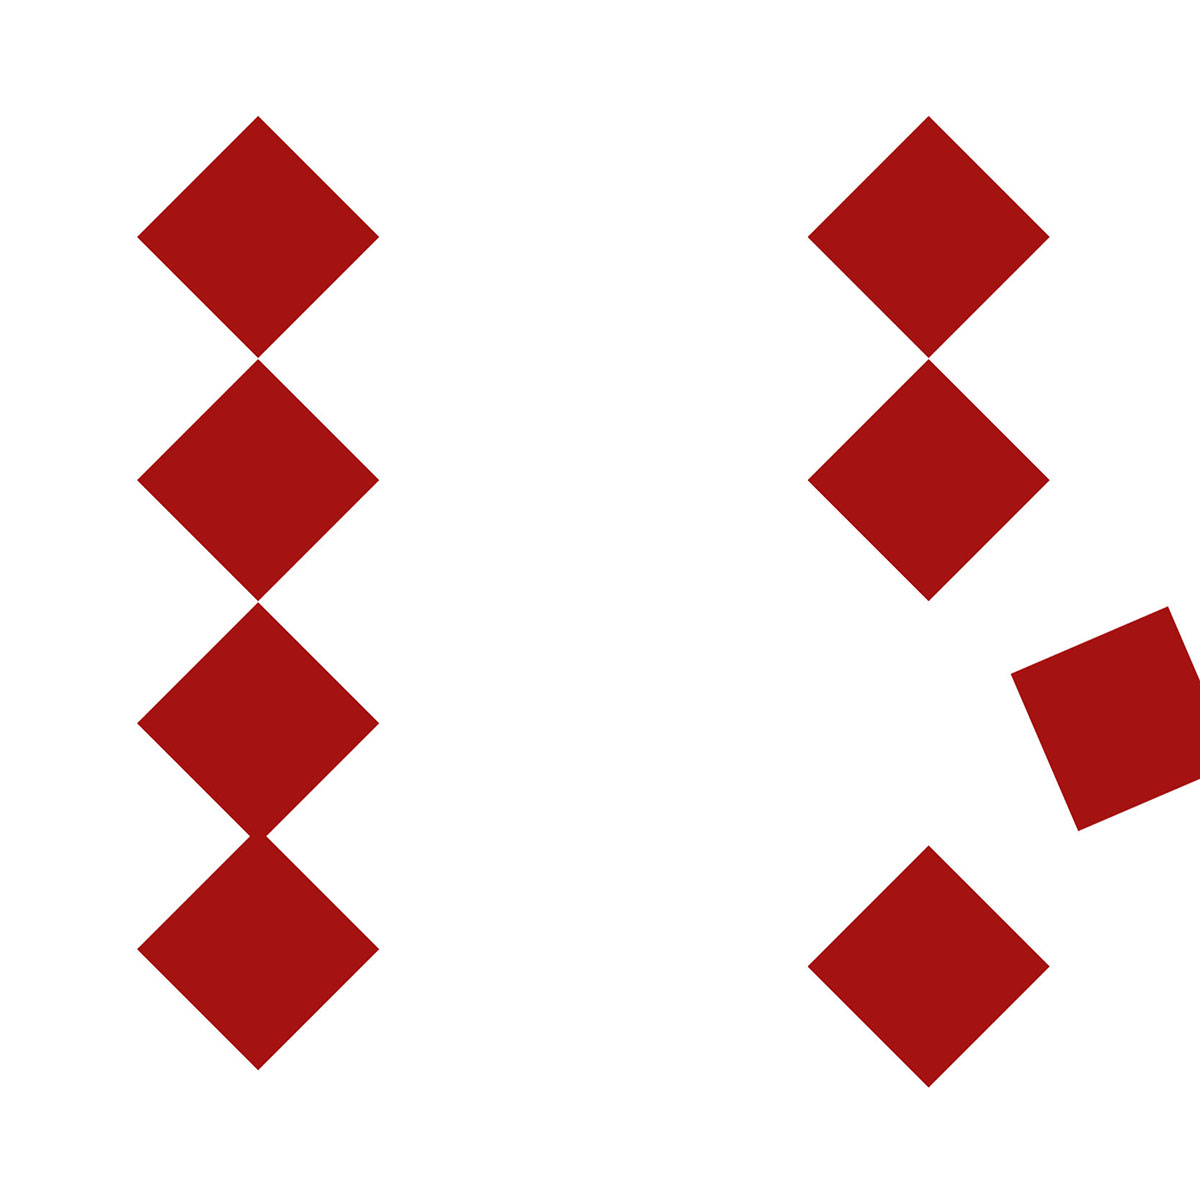 gestalt folder Minimalism grid b&w red modern